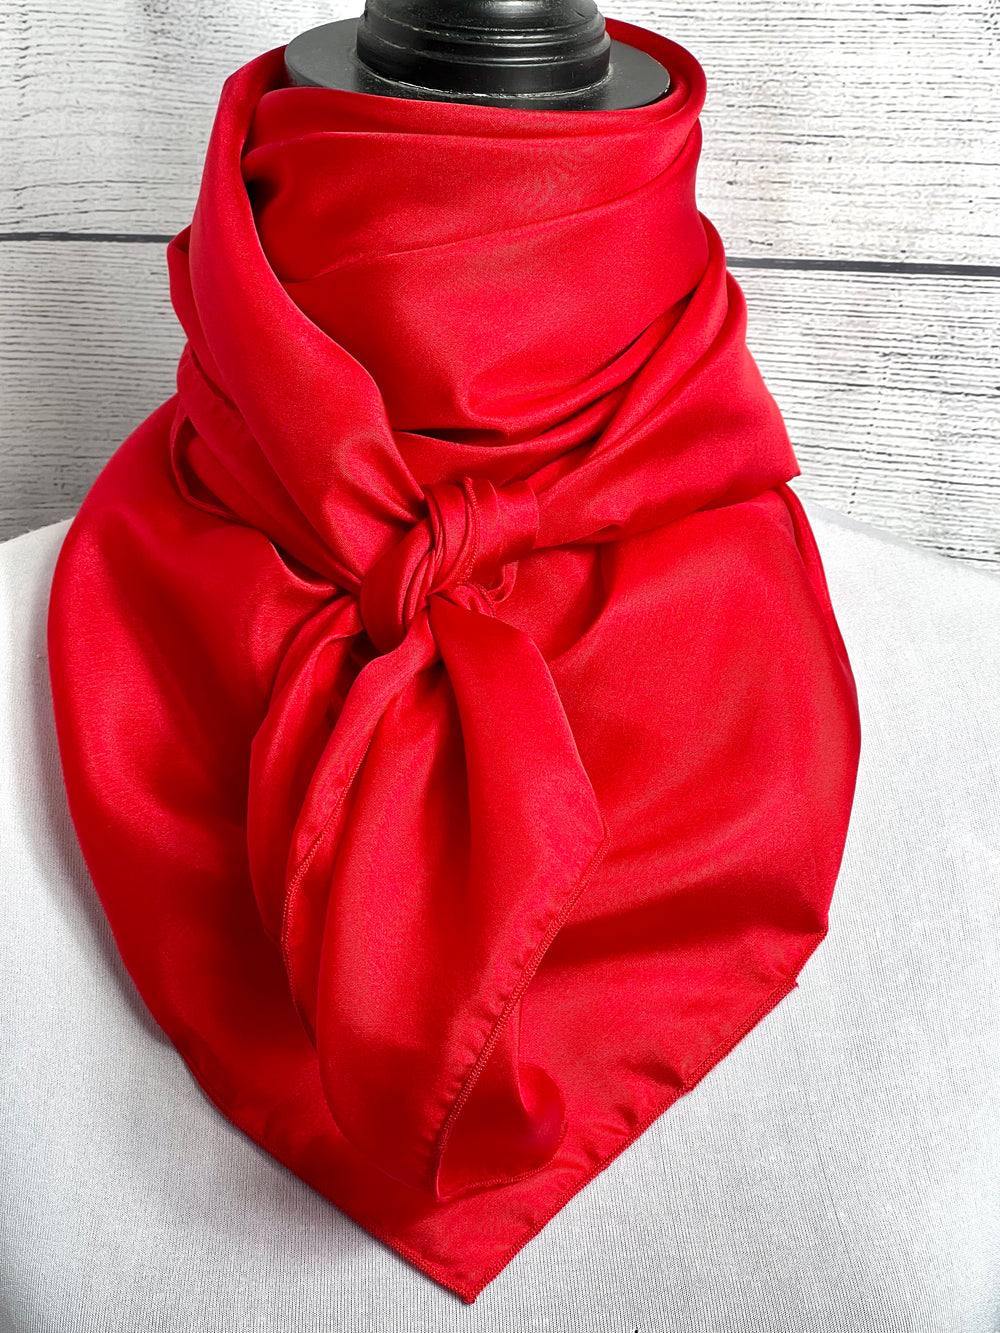 Solid Crimson Red Lightweight Silk Rag